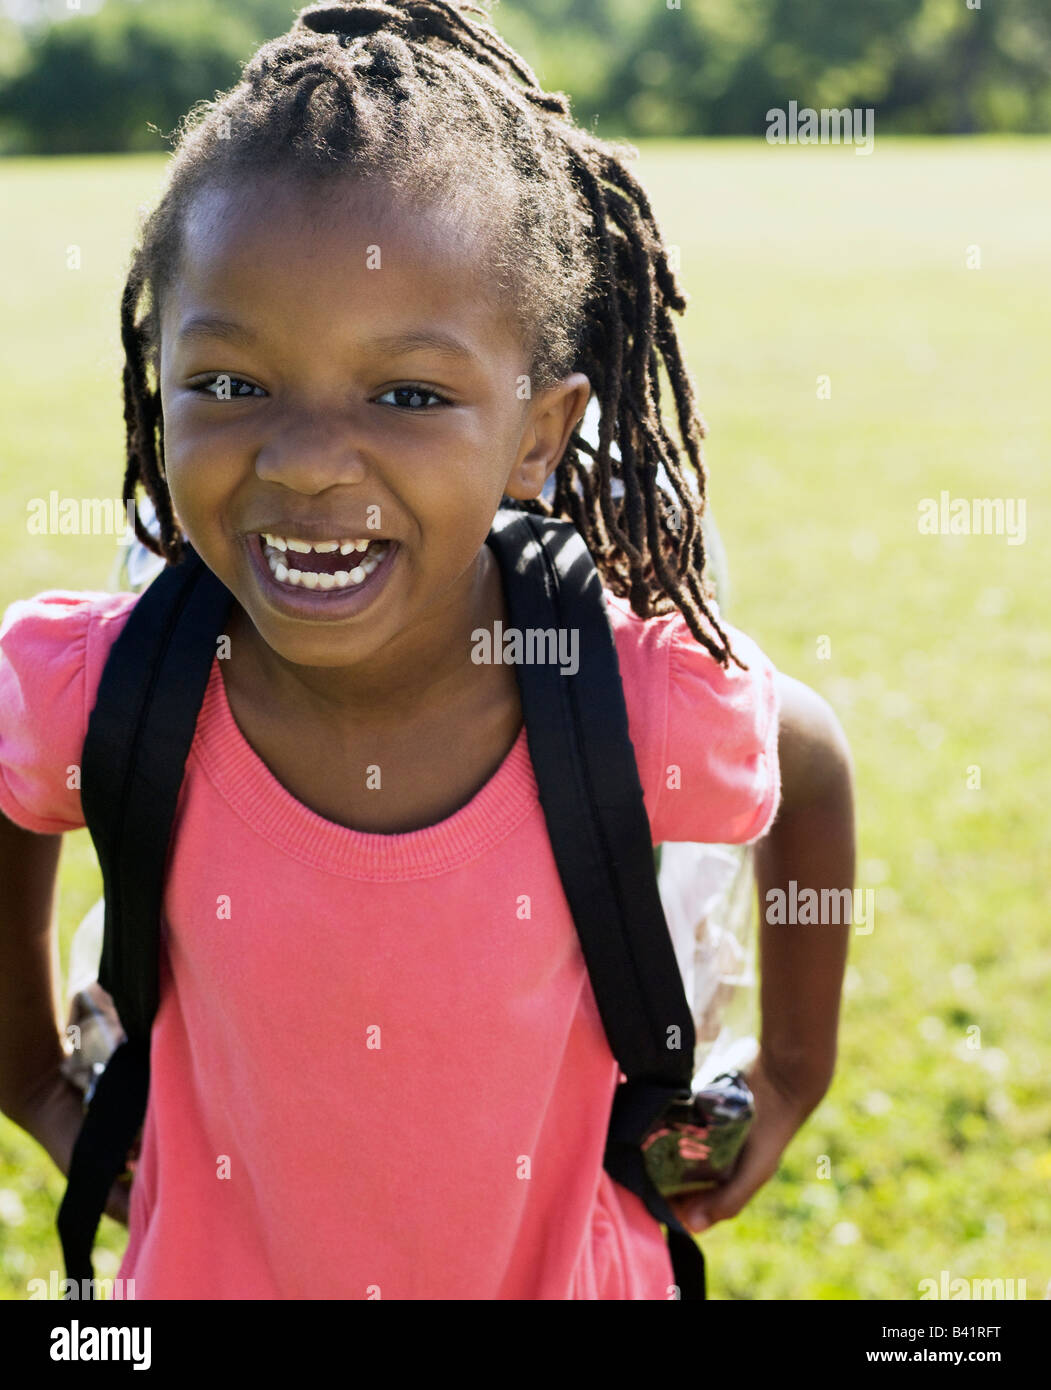 Los jóvenes afroamericanos vestida de mochila sonriendo a la cámara Foto de stock